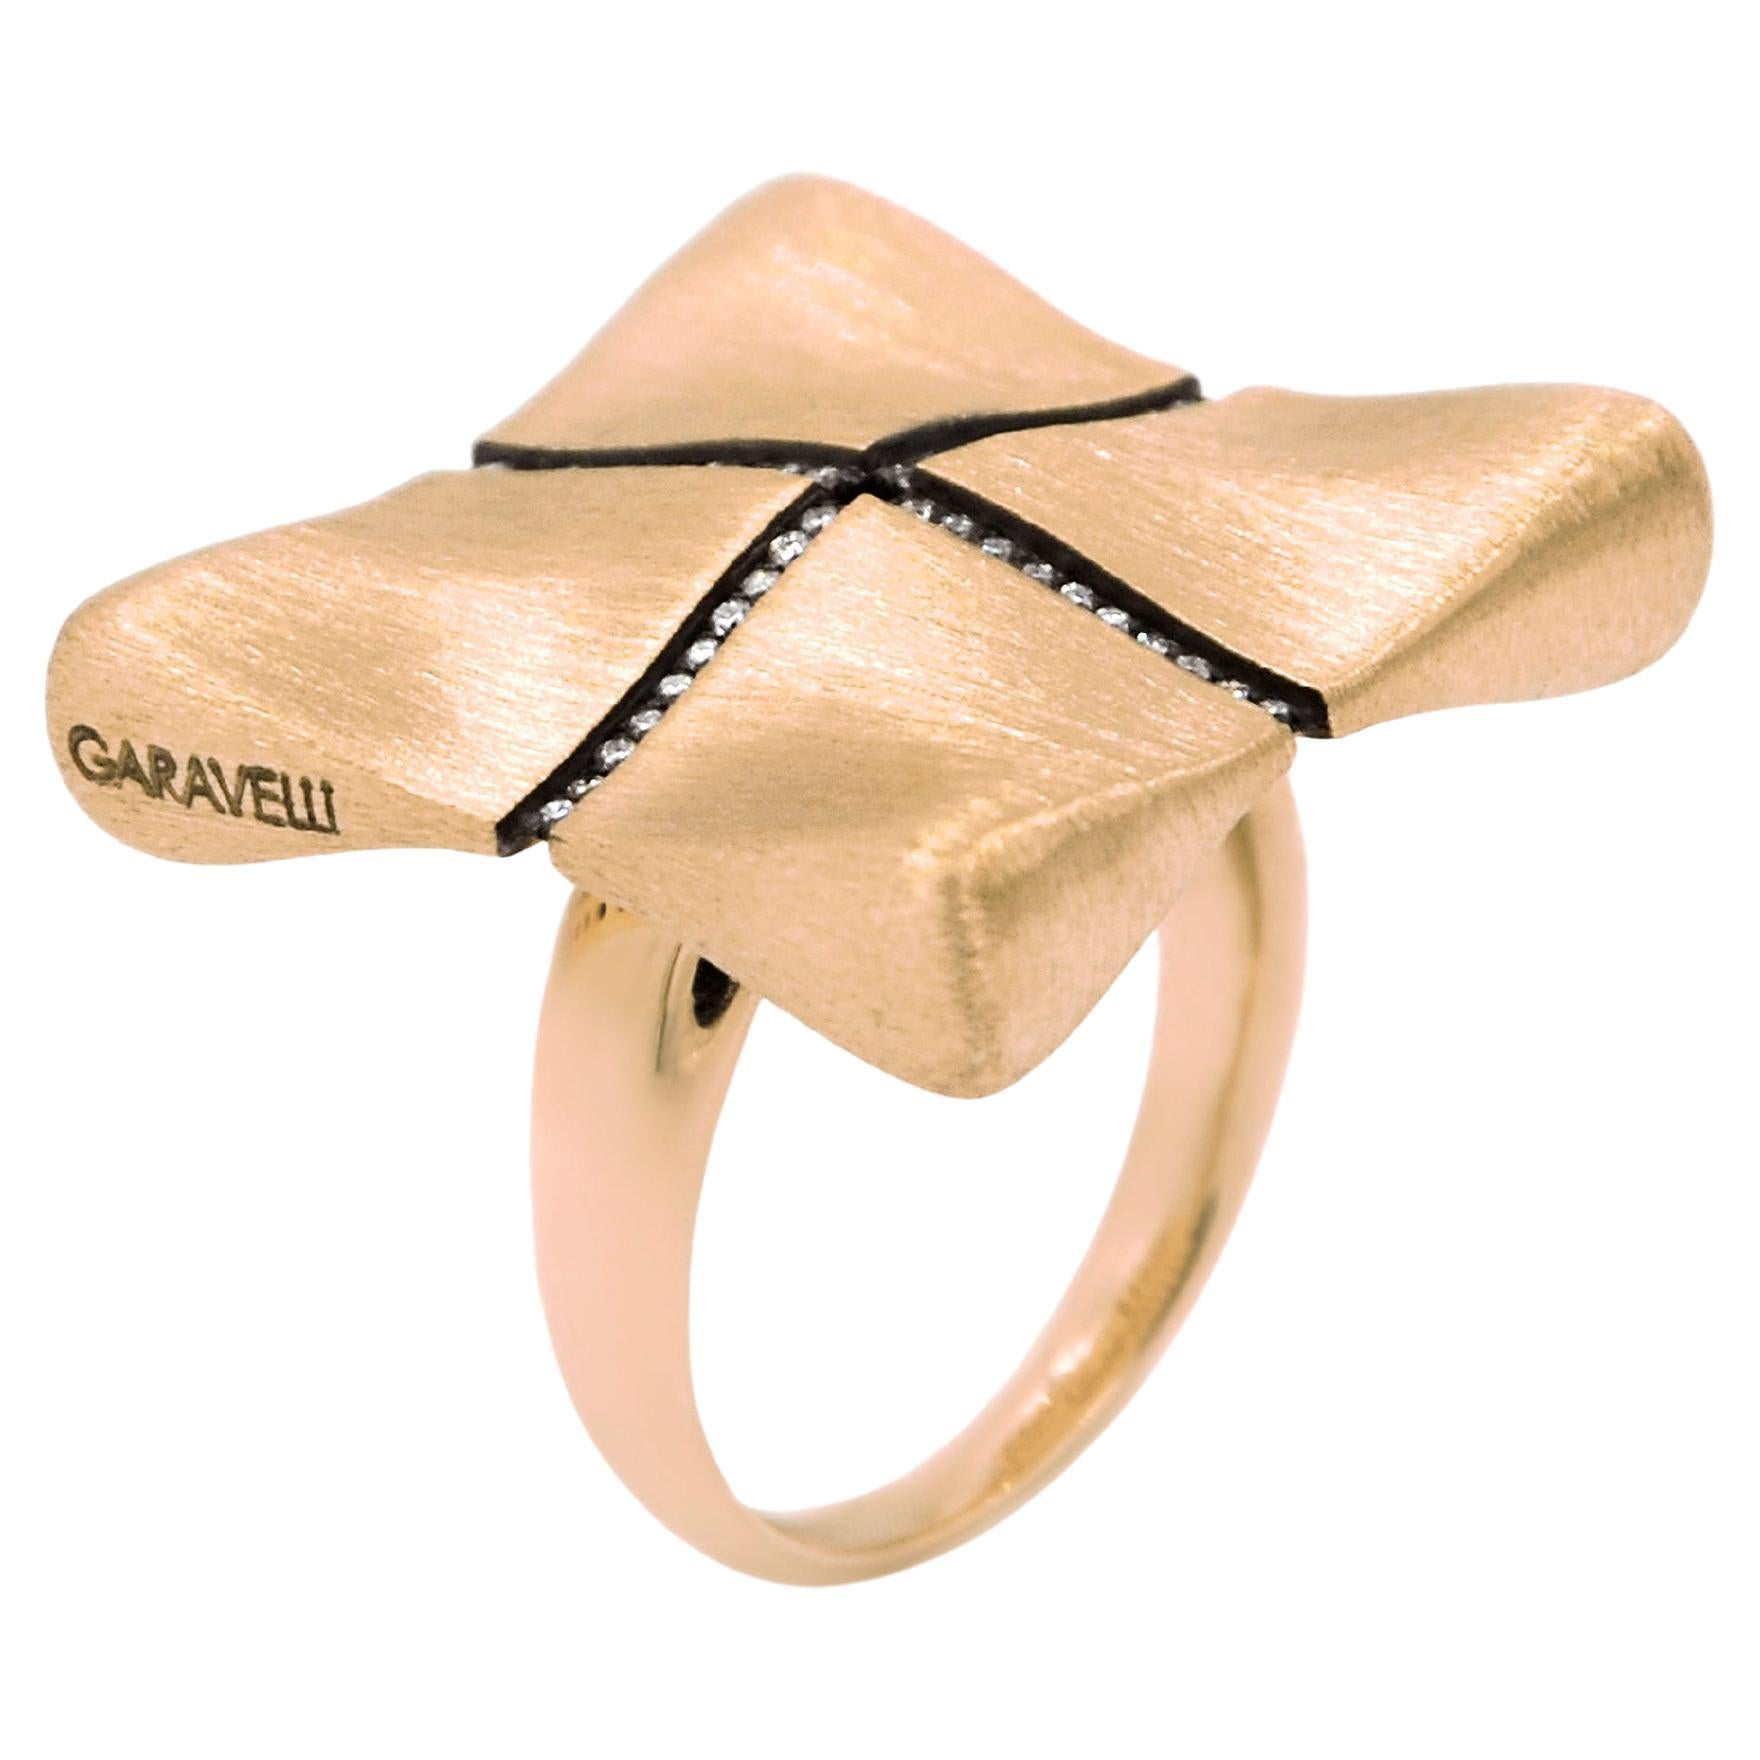 Garavelli 18 Karat Rose Gold White Diamonds Award Collection Ring